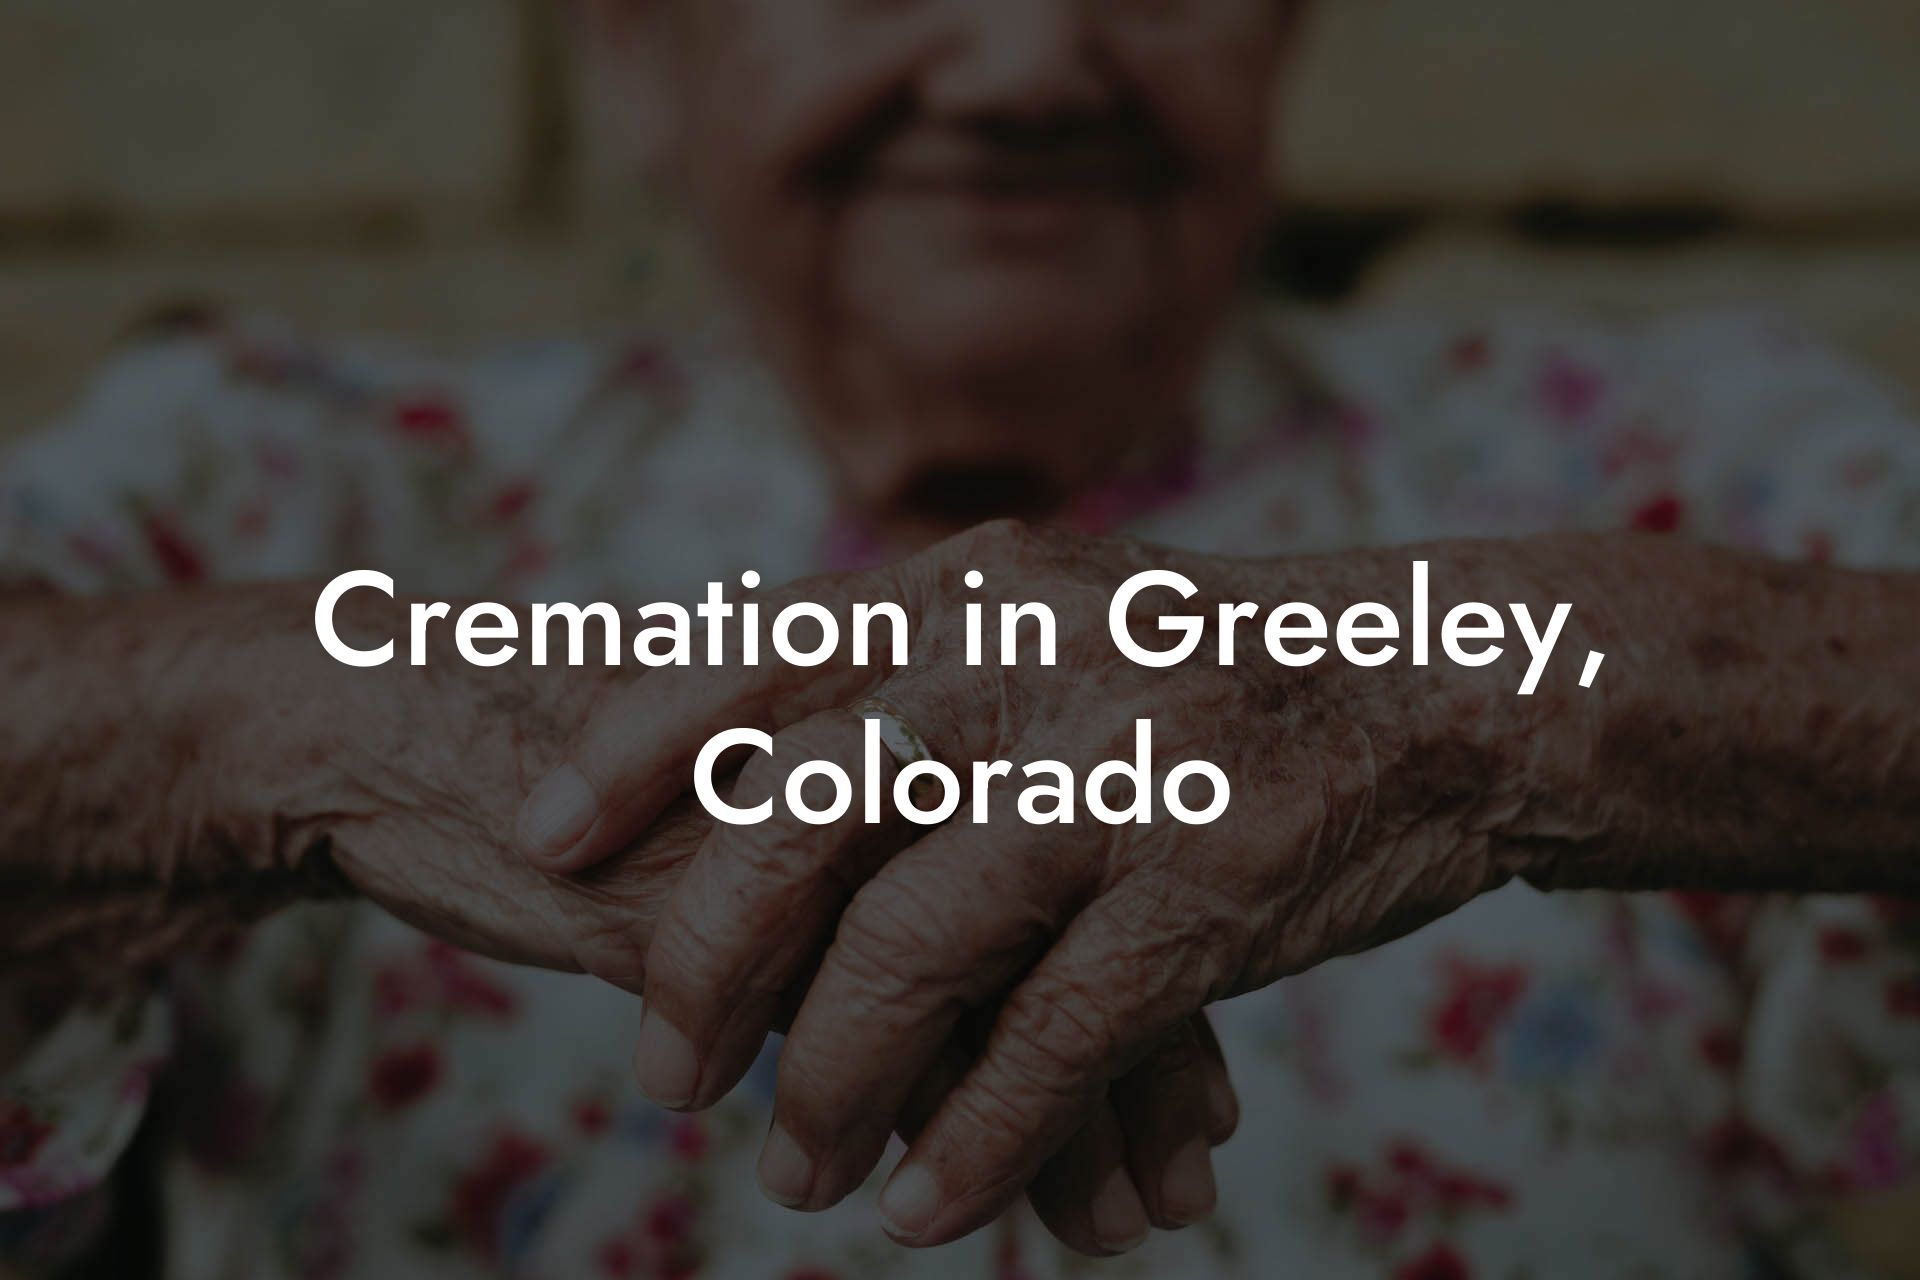 Cremation in Greeley, Colorado